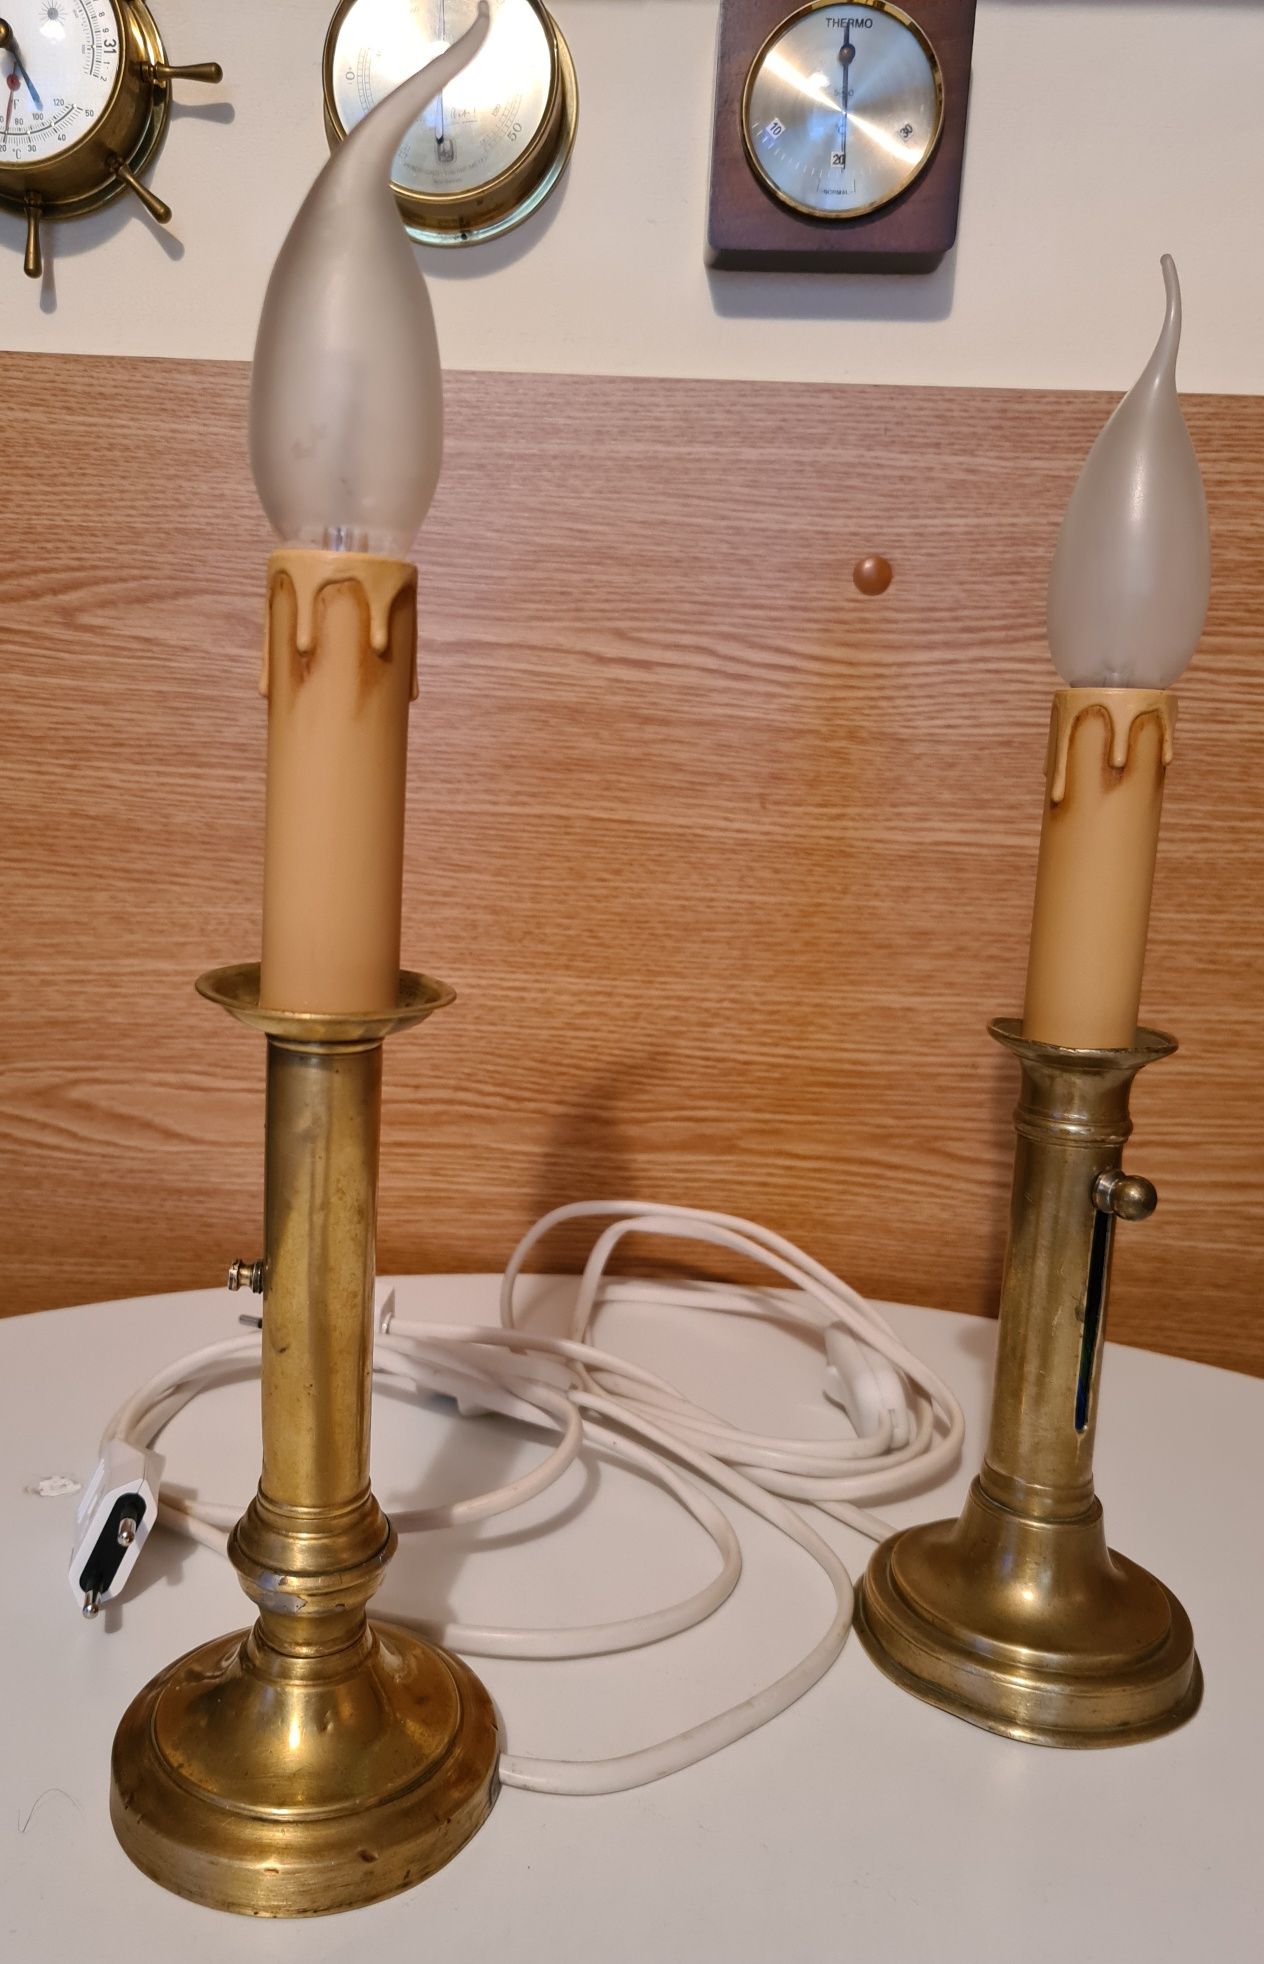 Sfeșnice bronz/alamă cu becuri lumânări electrice